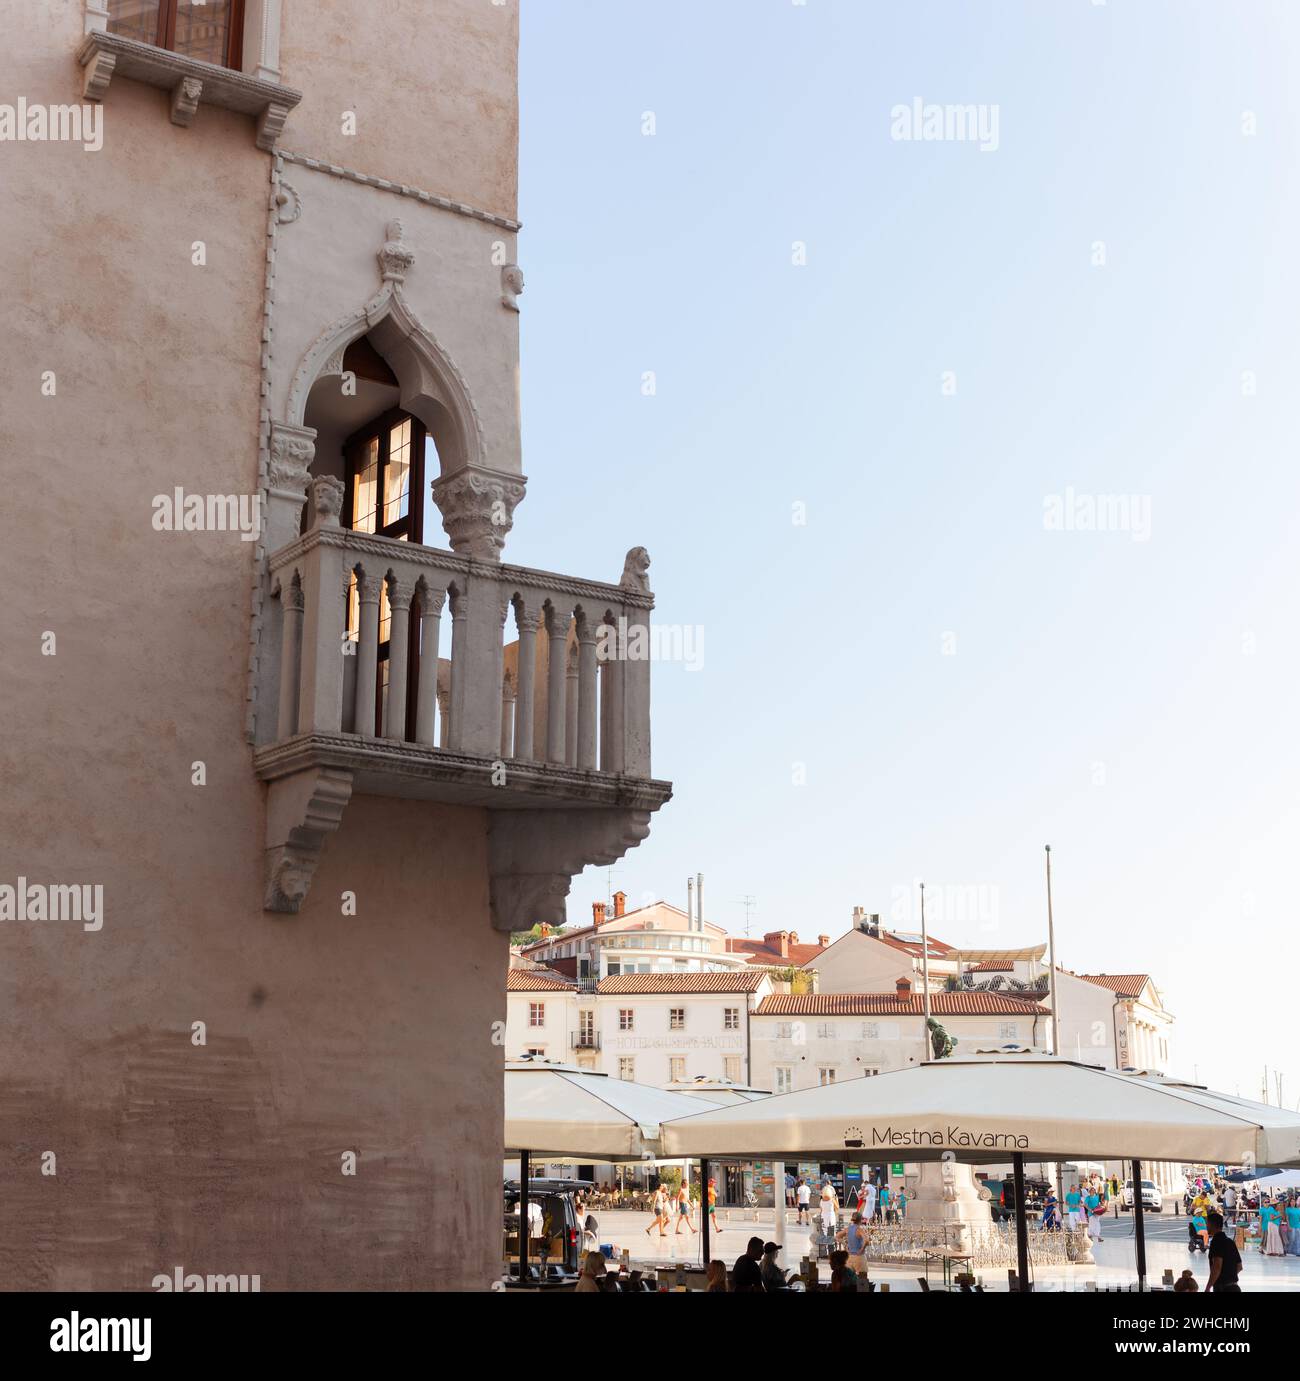 Casa veneziana. Architettura gotica veneziana, metà del XV secolo, tripla finestra, balcone angolare con balaustra in pietra, Piazza Tartini, Pirano, S. Foto Stock